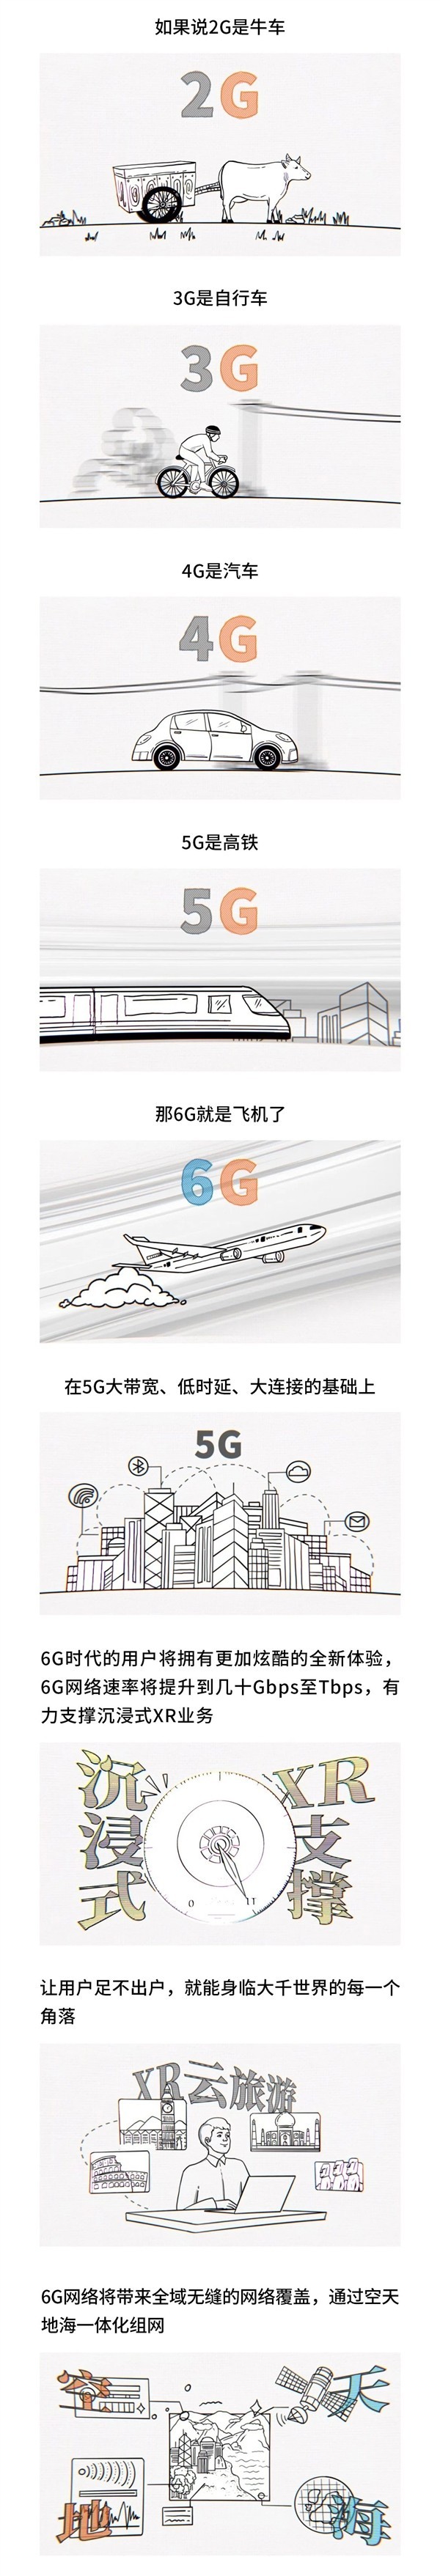 6G网络要来了:5G是高铁 6G就是飞机